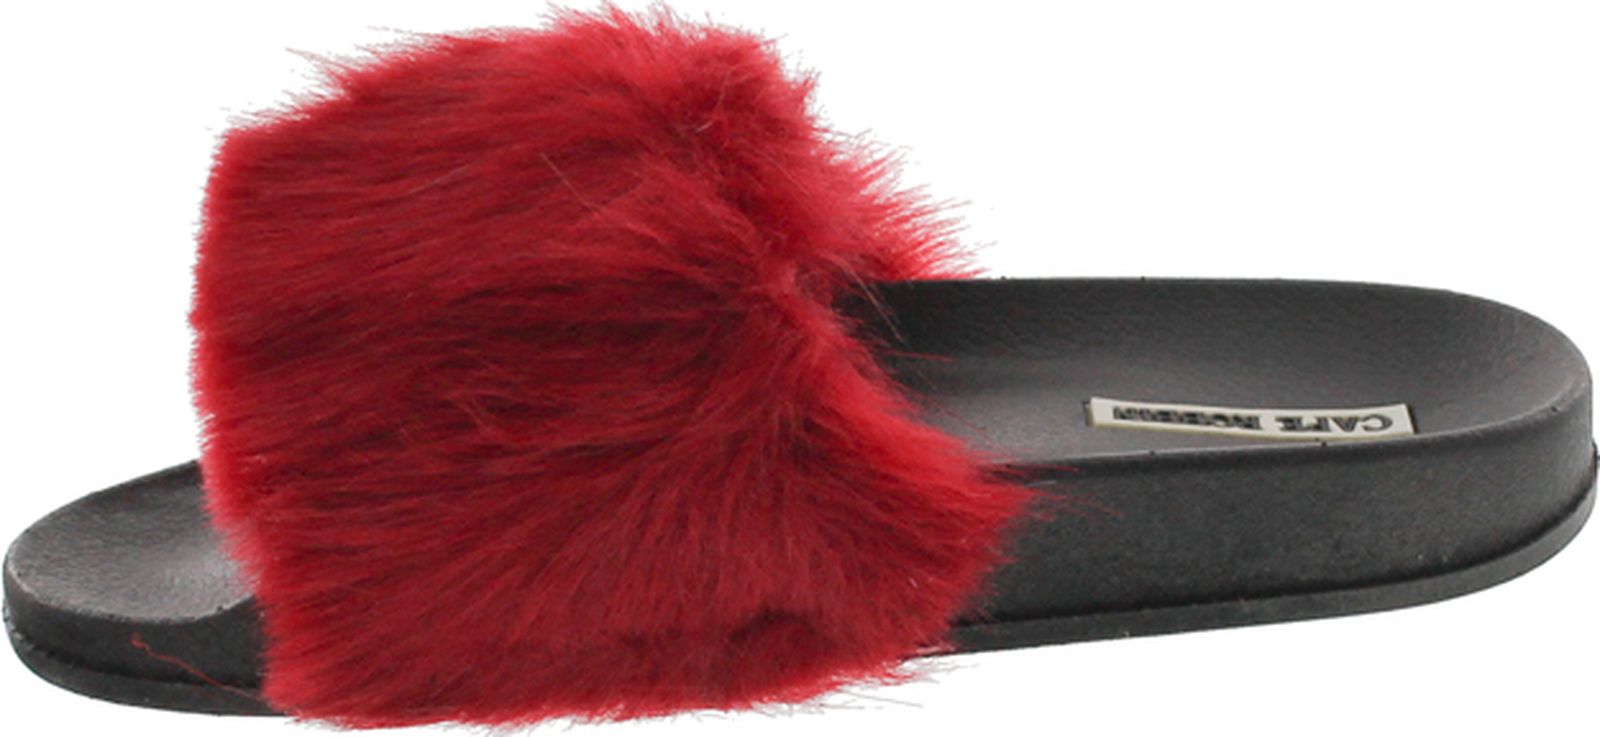 Cape Robbin Moira-5 Women Flip Flop Faux Fuzzy Fur Slide Slip On Flat Sandal Shoe Slipper